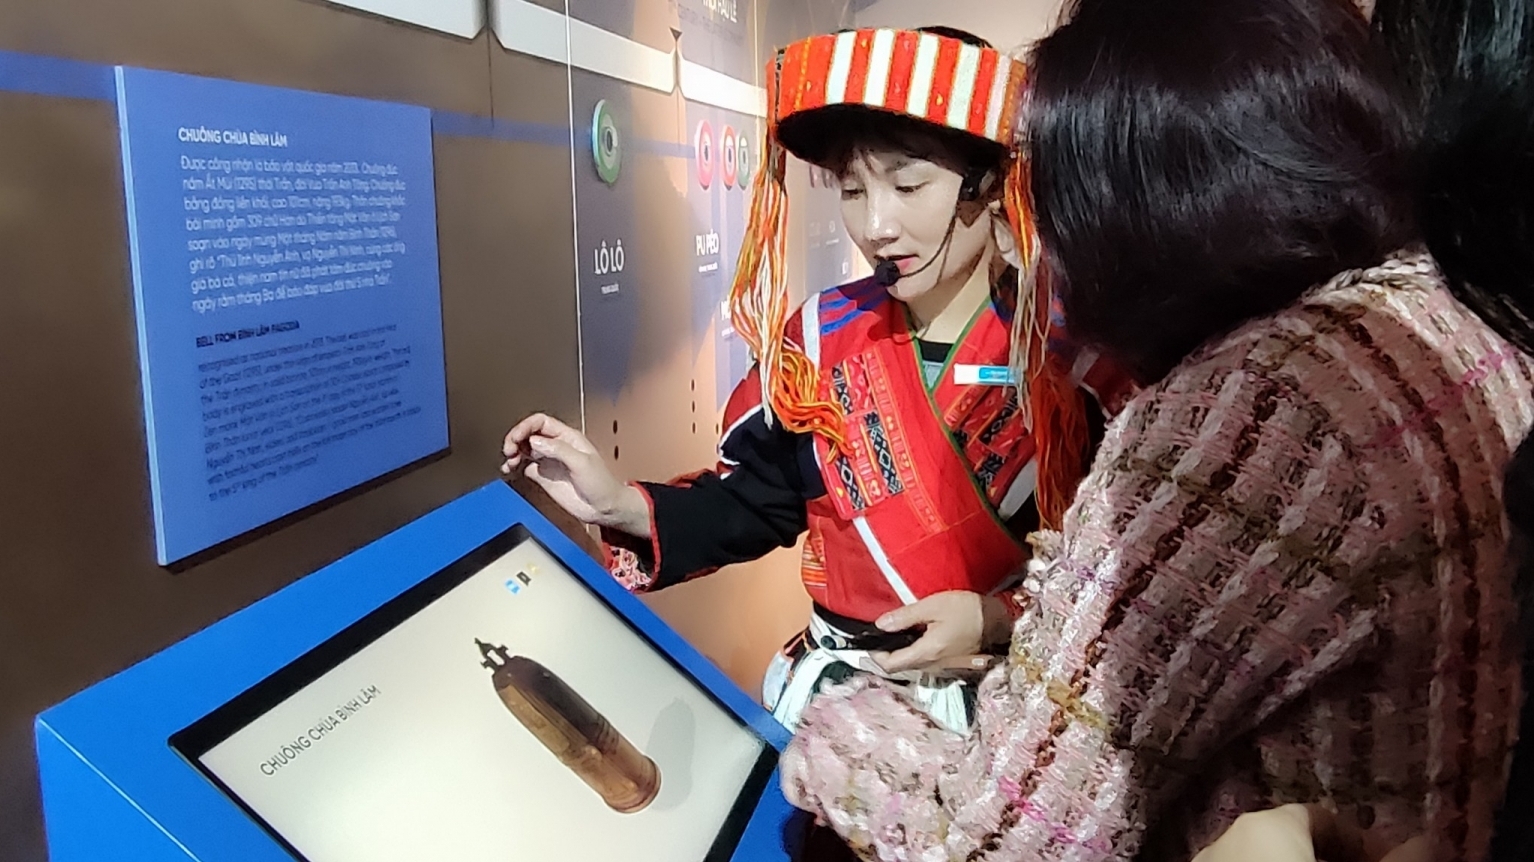 数字化博物馆 向游客生动地传达河江之美